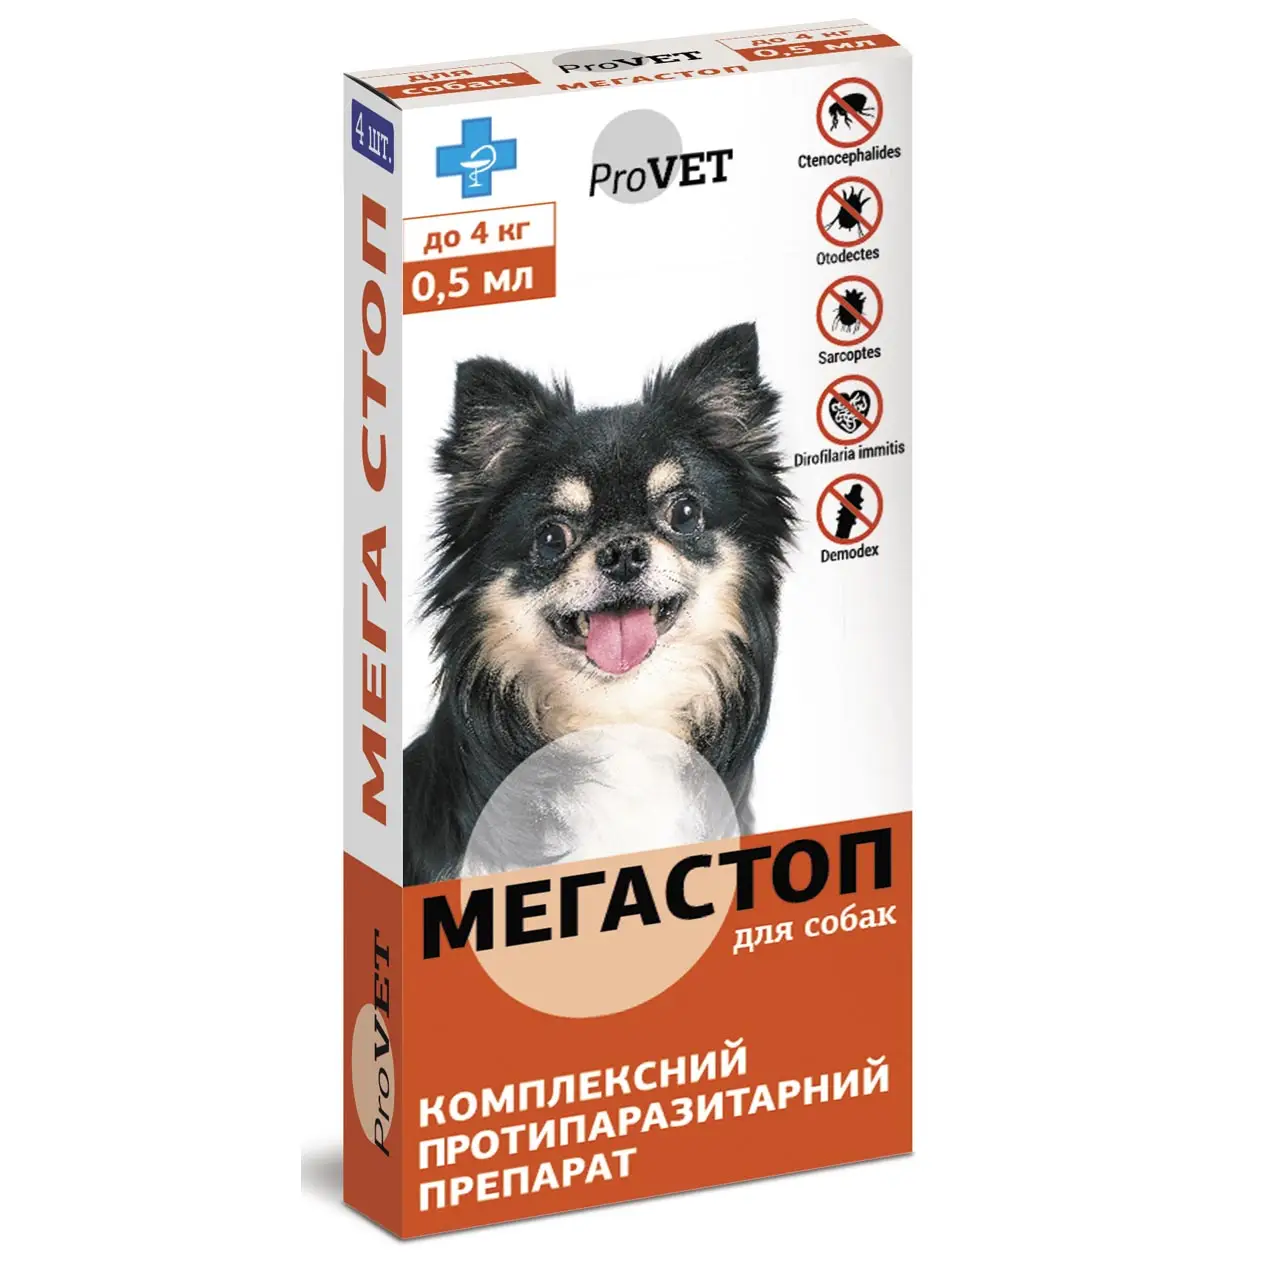 Краплі на холку для собак ProVET Мега Стоп, від зовнішніх та внутрішніх паразитів, до 4 кг, 1 піпетка по 0,5 мл (PR241745) - фото 1